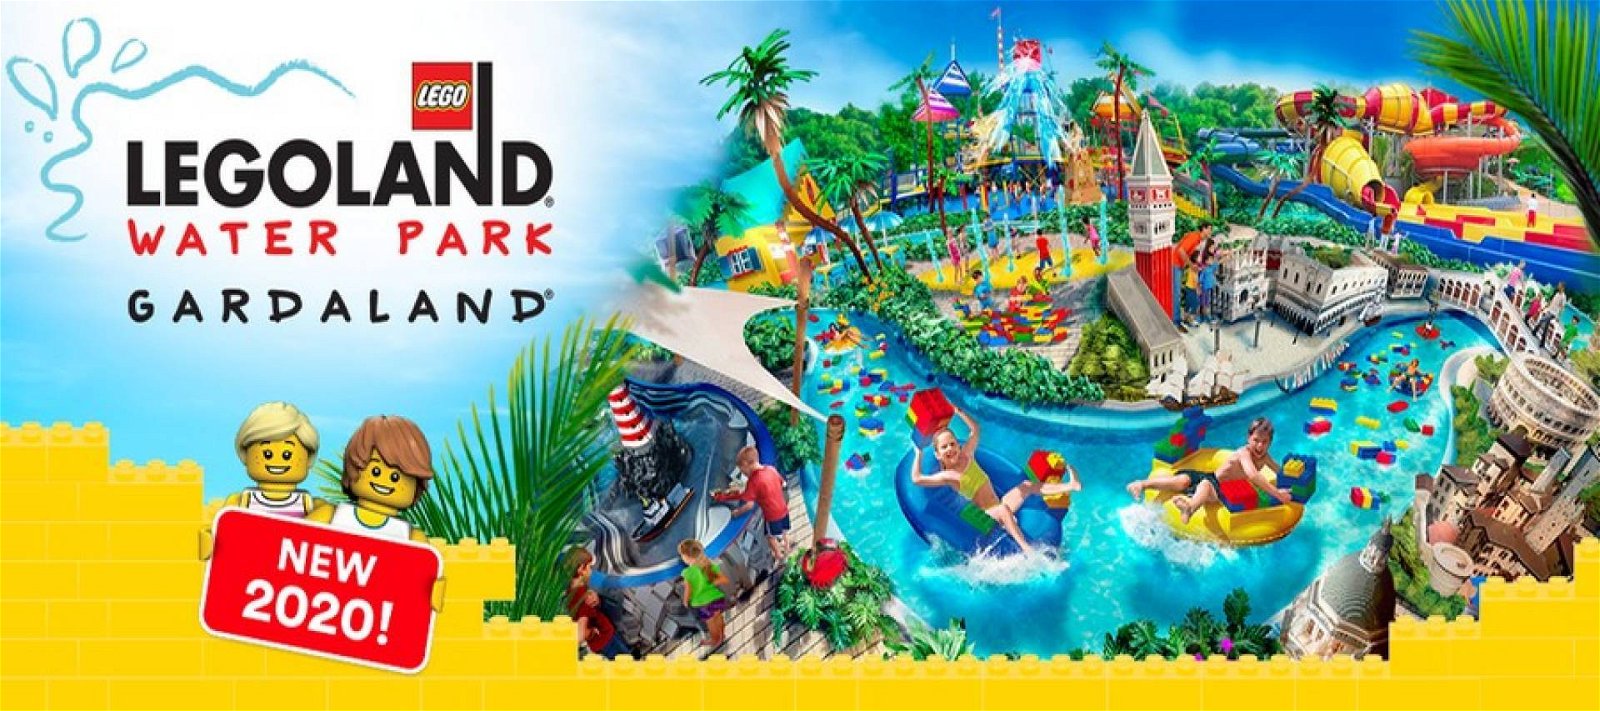 Immagine di Legoland Waterpark Gardaland: presentato ufficialmente